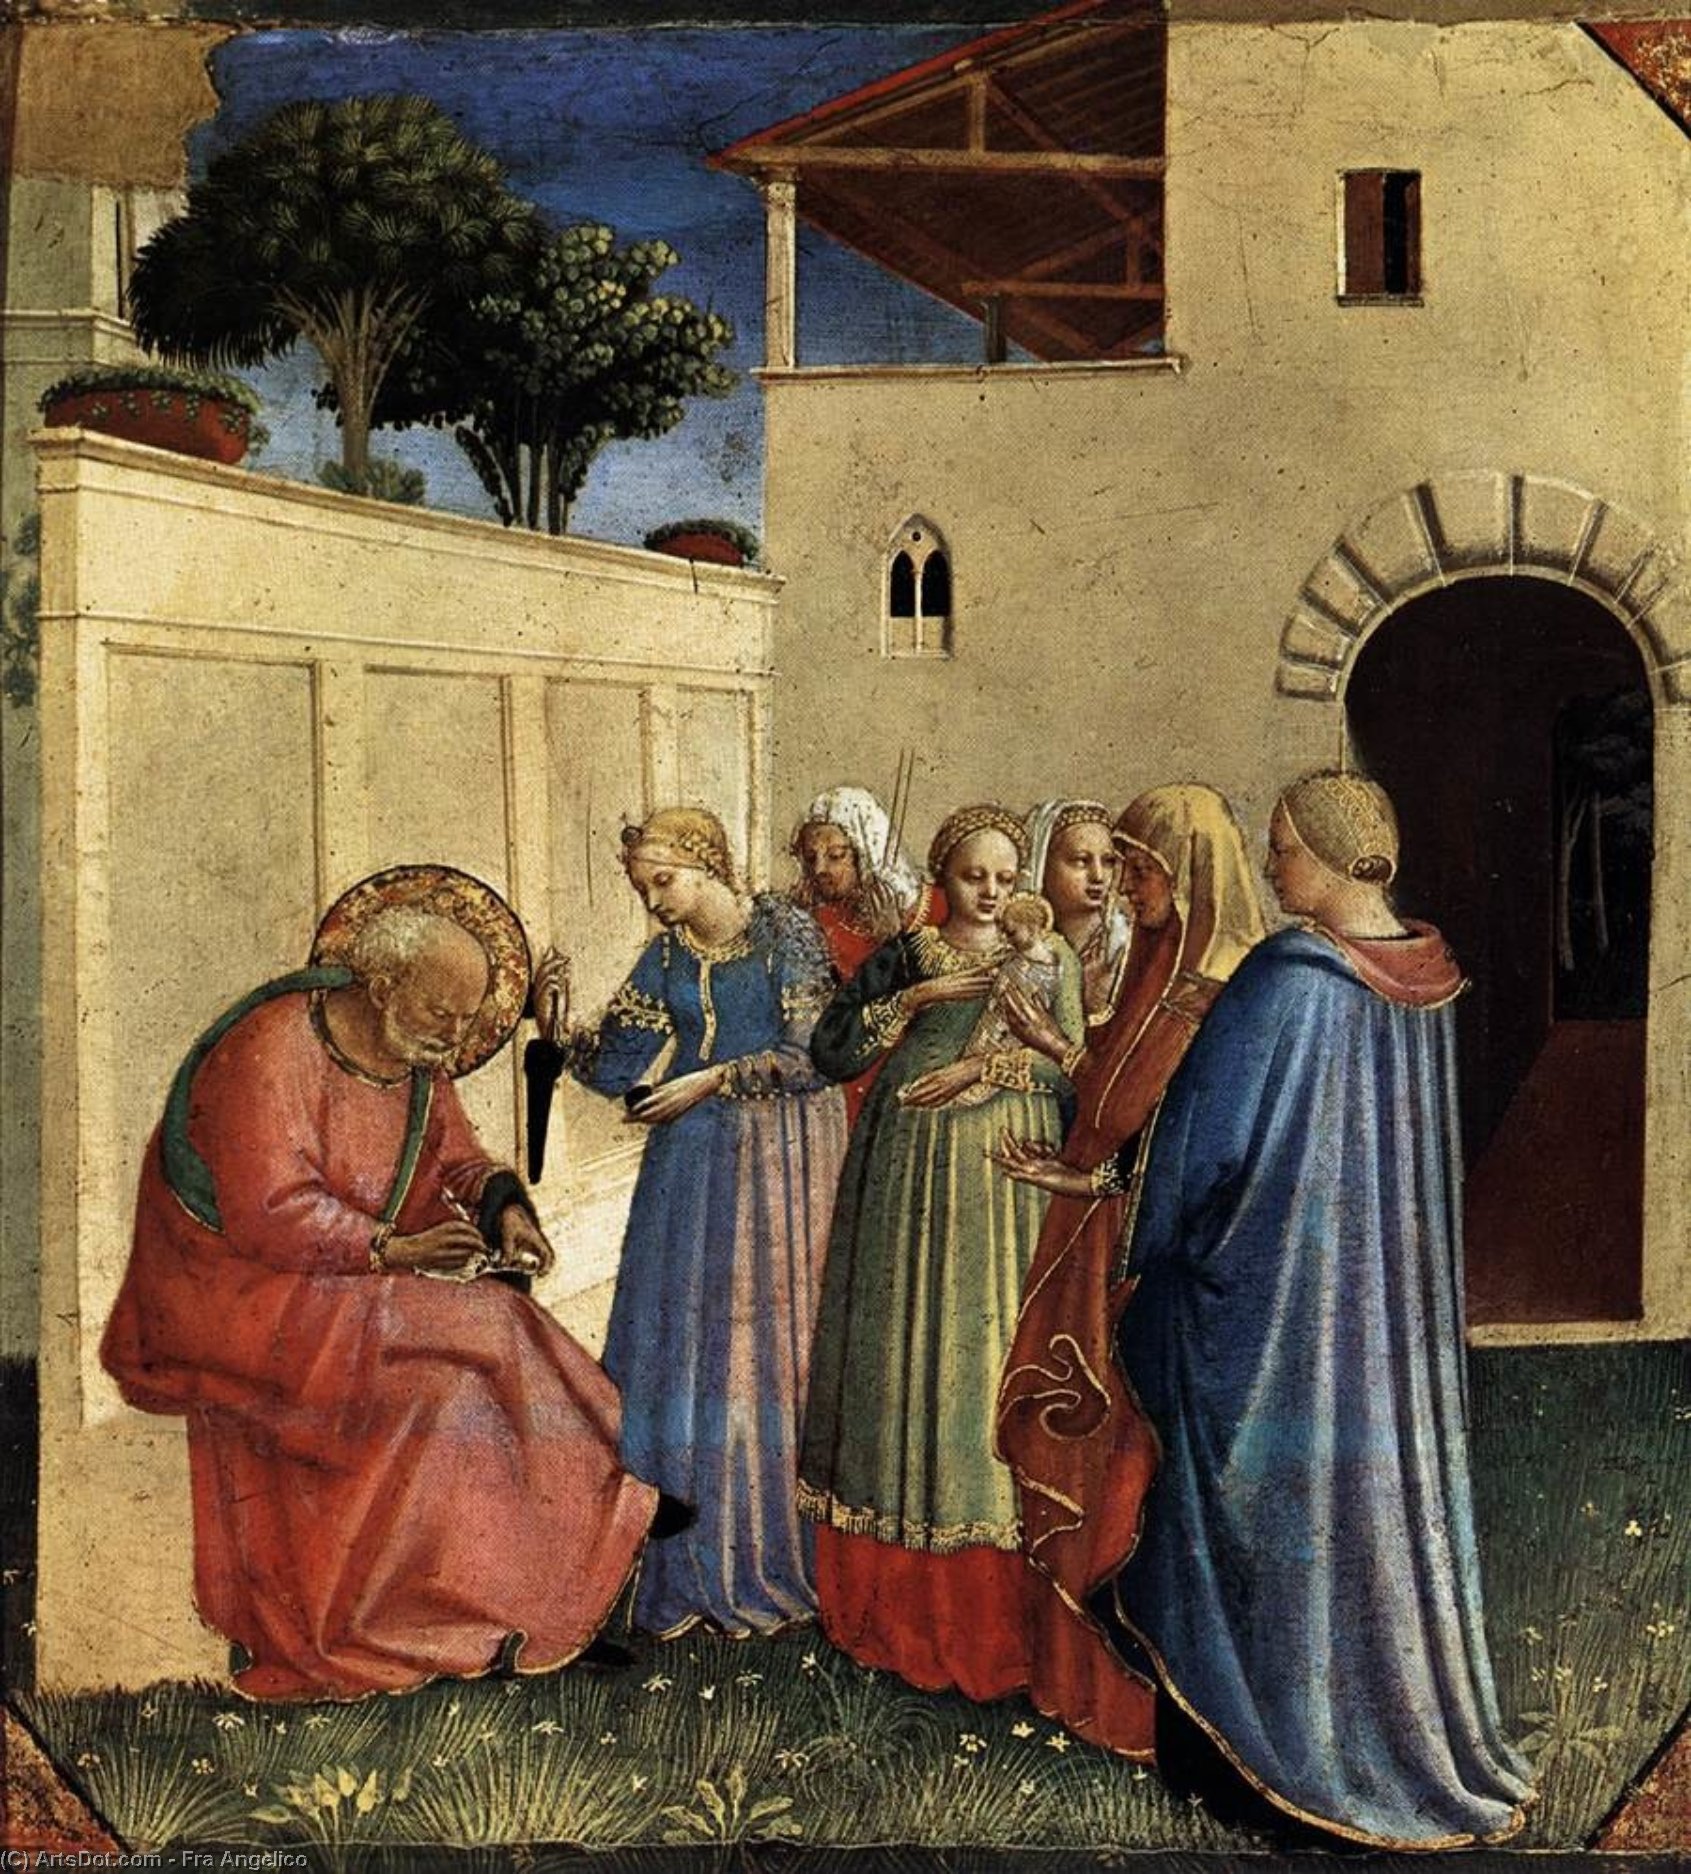 WikiOO.org - Güzel Sanatlar Ansiklopedisi - Resim, Resimler Fra Angelico - The Naming of St John the Baptist